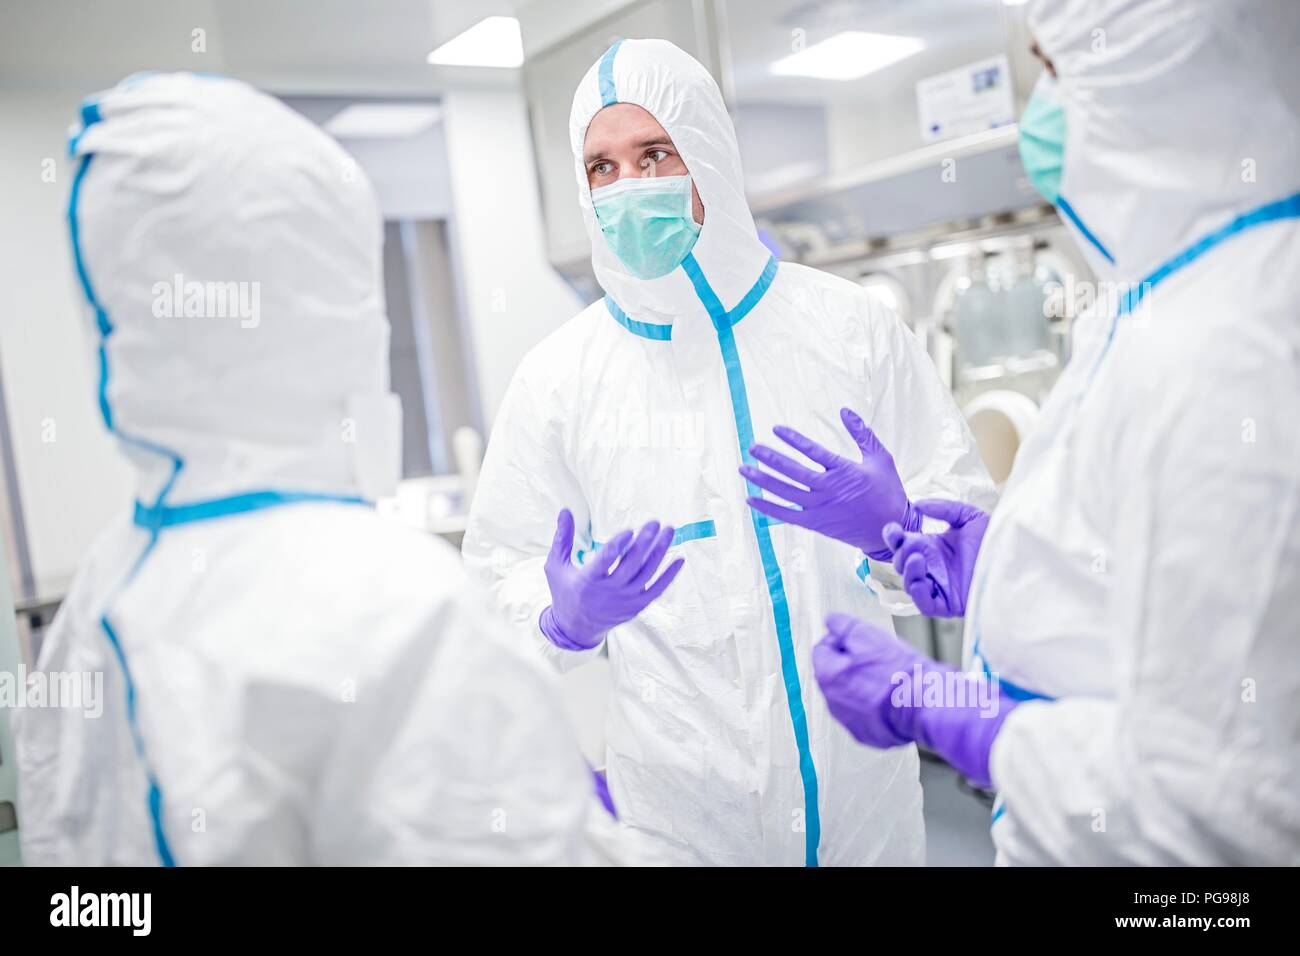 Des techniciens de laboratoires équipés de vêtements de protection et de masques dans un laboratoire qui doit maintenir un environnement stérile. Banque D'Images